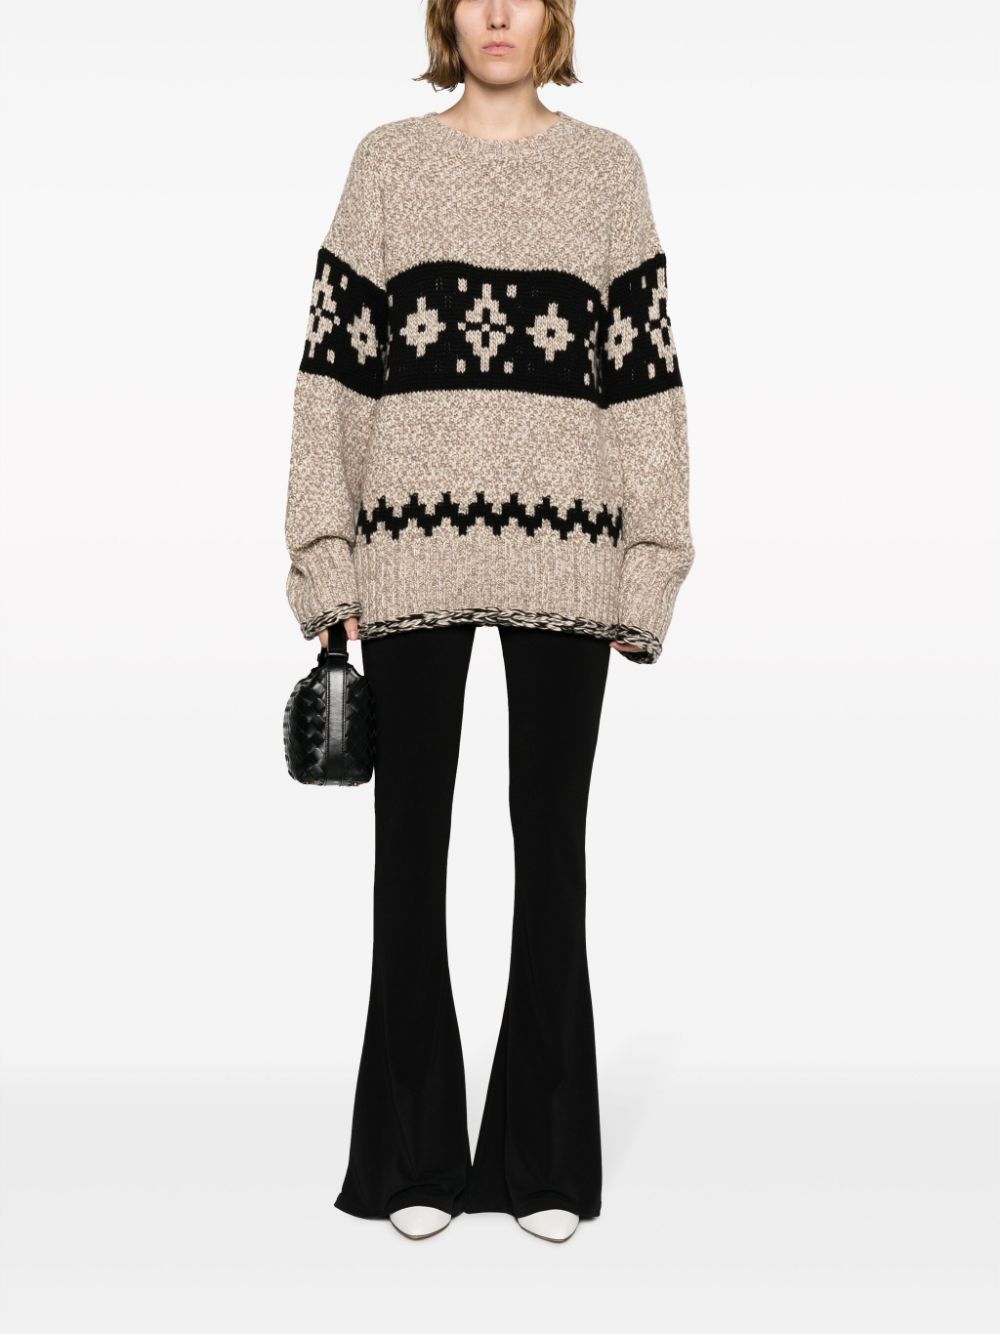 KHAITE intarsia-knit cashmere jumper - Beige